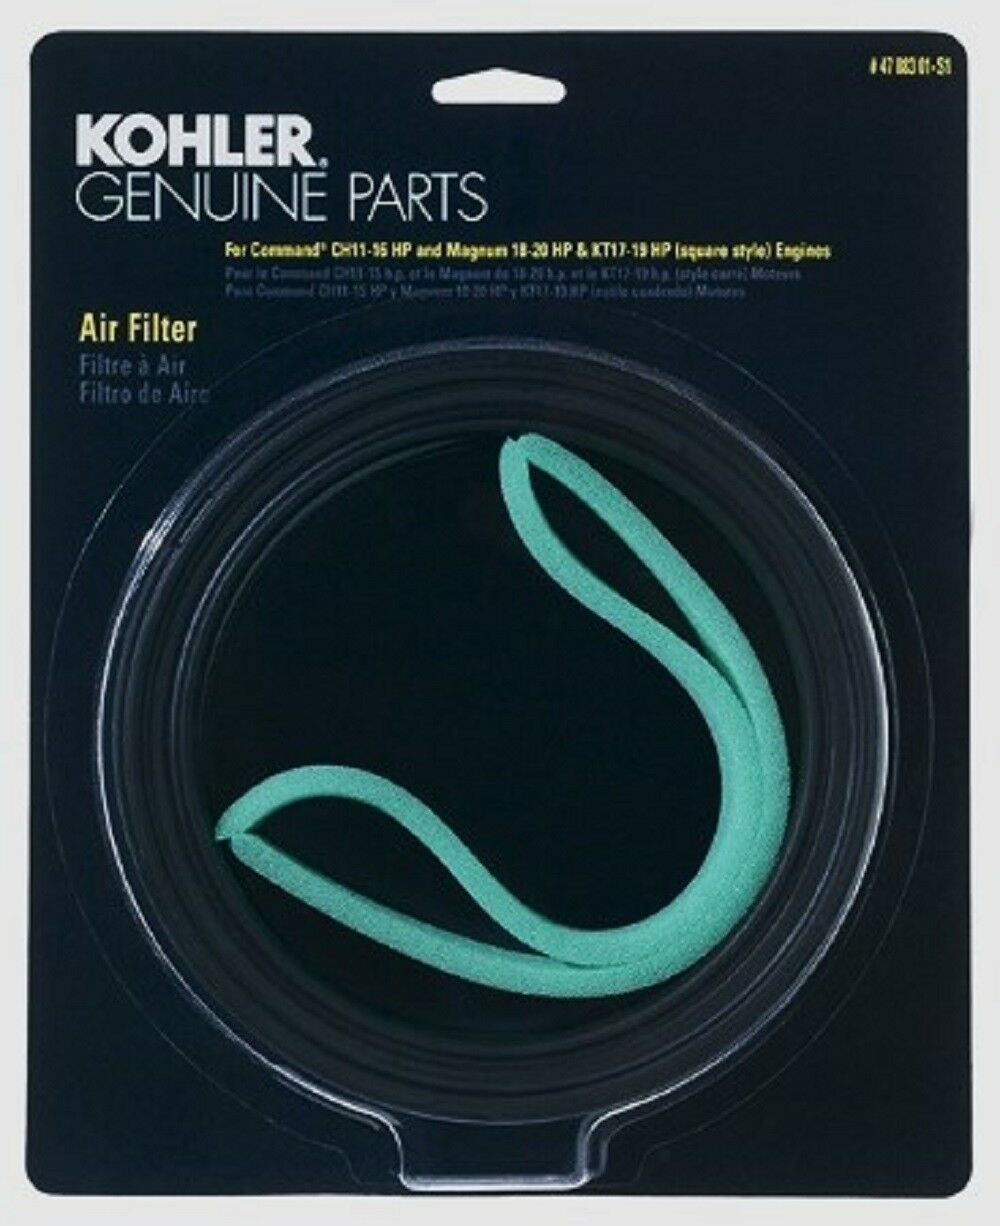 Kohler Air & Pre-Filter 47 883 01-S1 Command Ch11 Ch16 Magnum 18-20 CH410 CH450 - $27.12